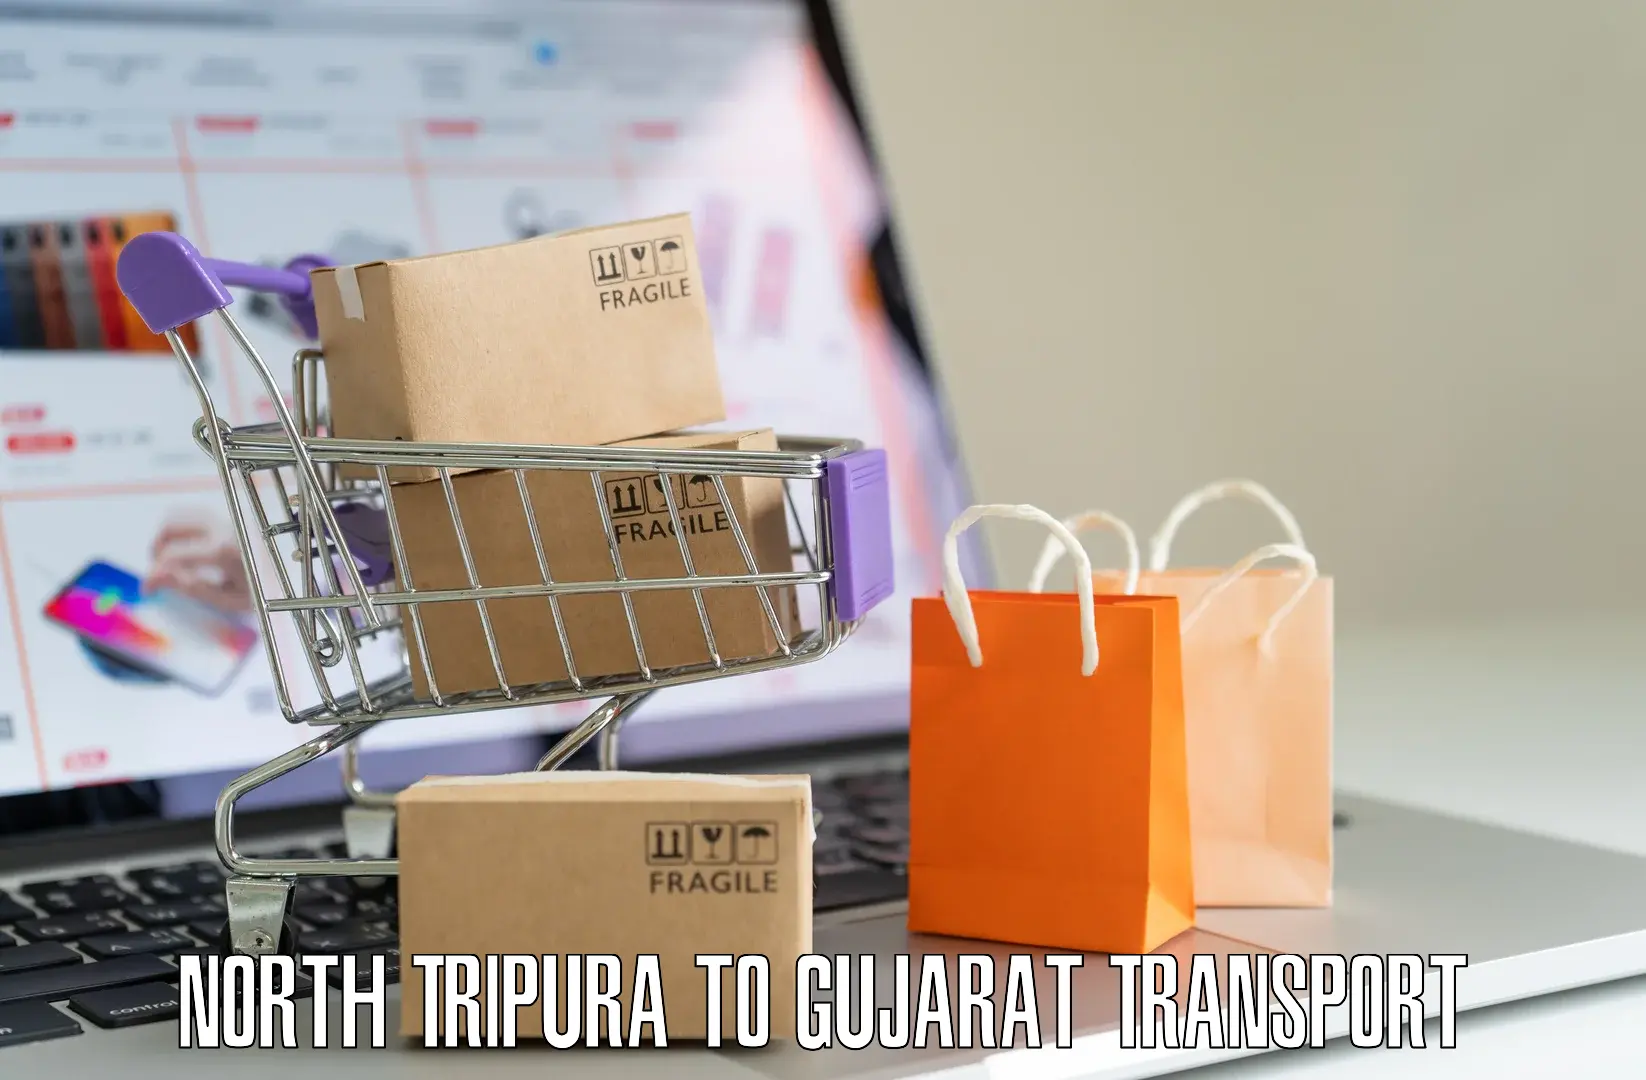 Road transport online services North Tripura to Himmatnagar